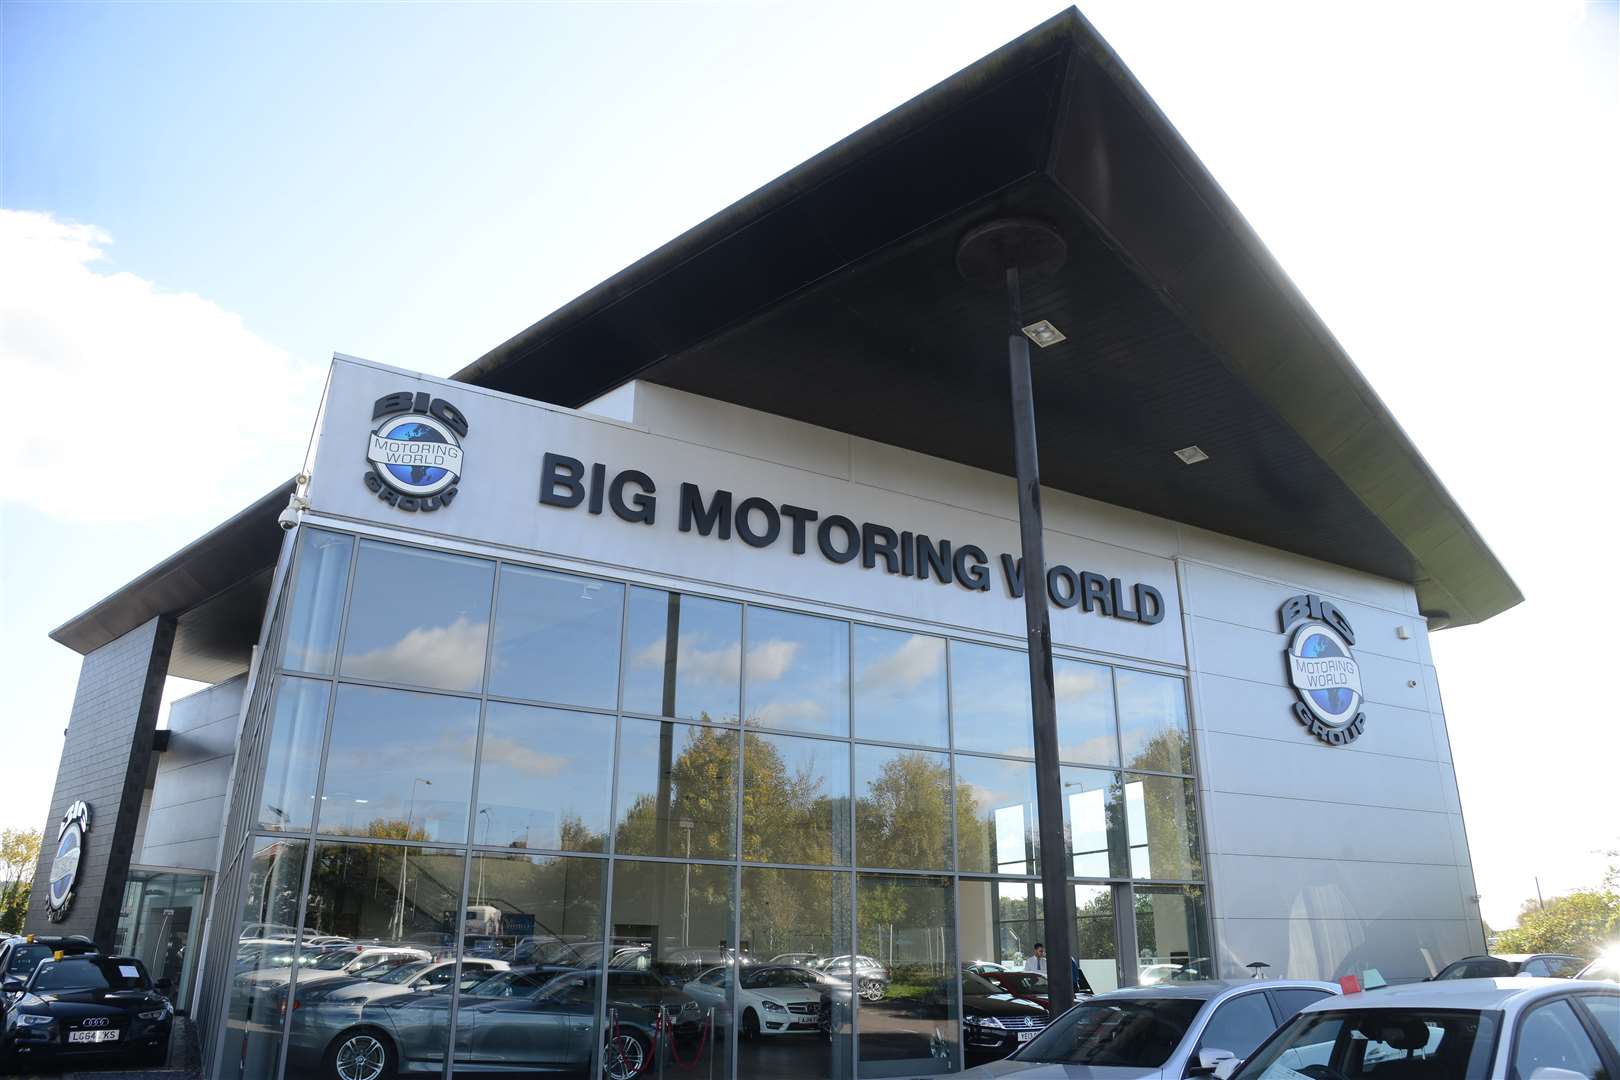 Big Motoring World's base in Snodland